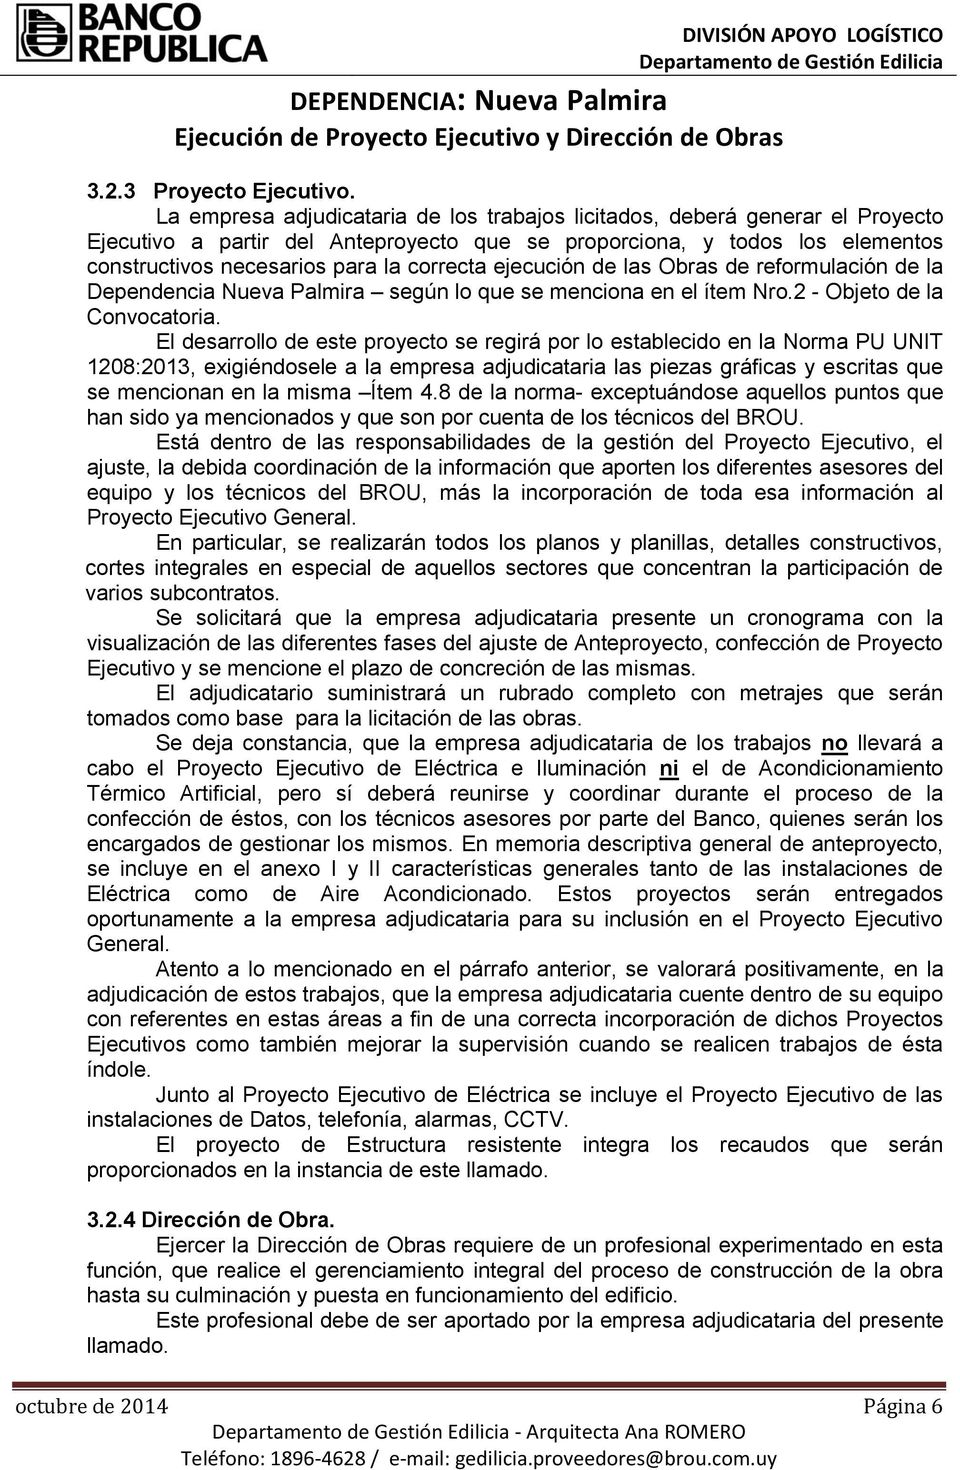 ejecución de las Obras de reformulación de la Dependencia Nueva Palmira según lo que se menciona en el ítem Nro.2 - Objeto de la Convocatoria.